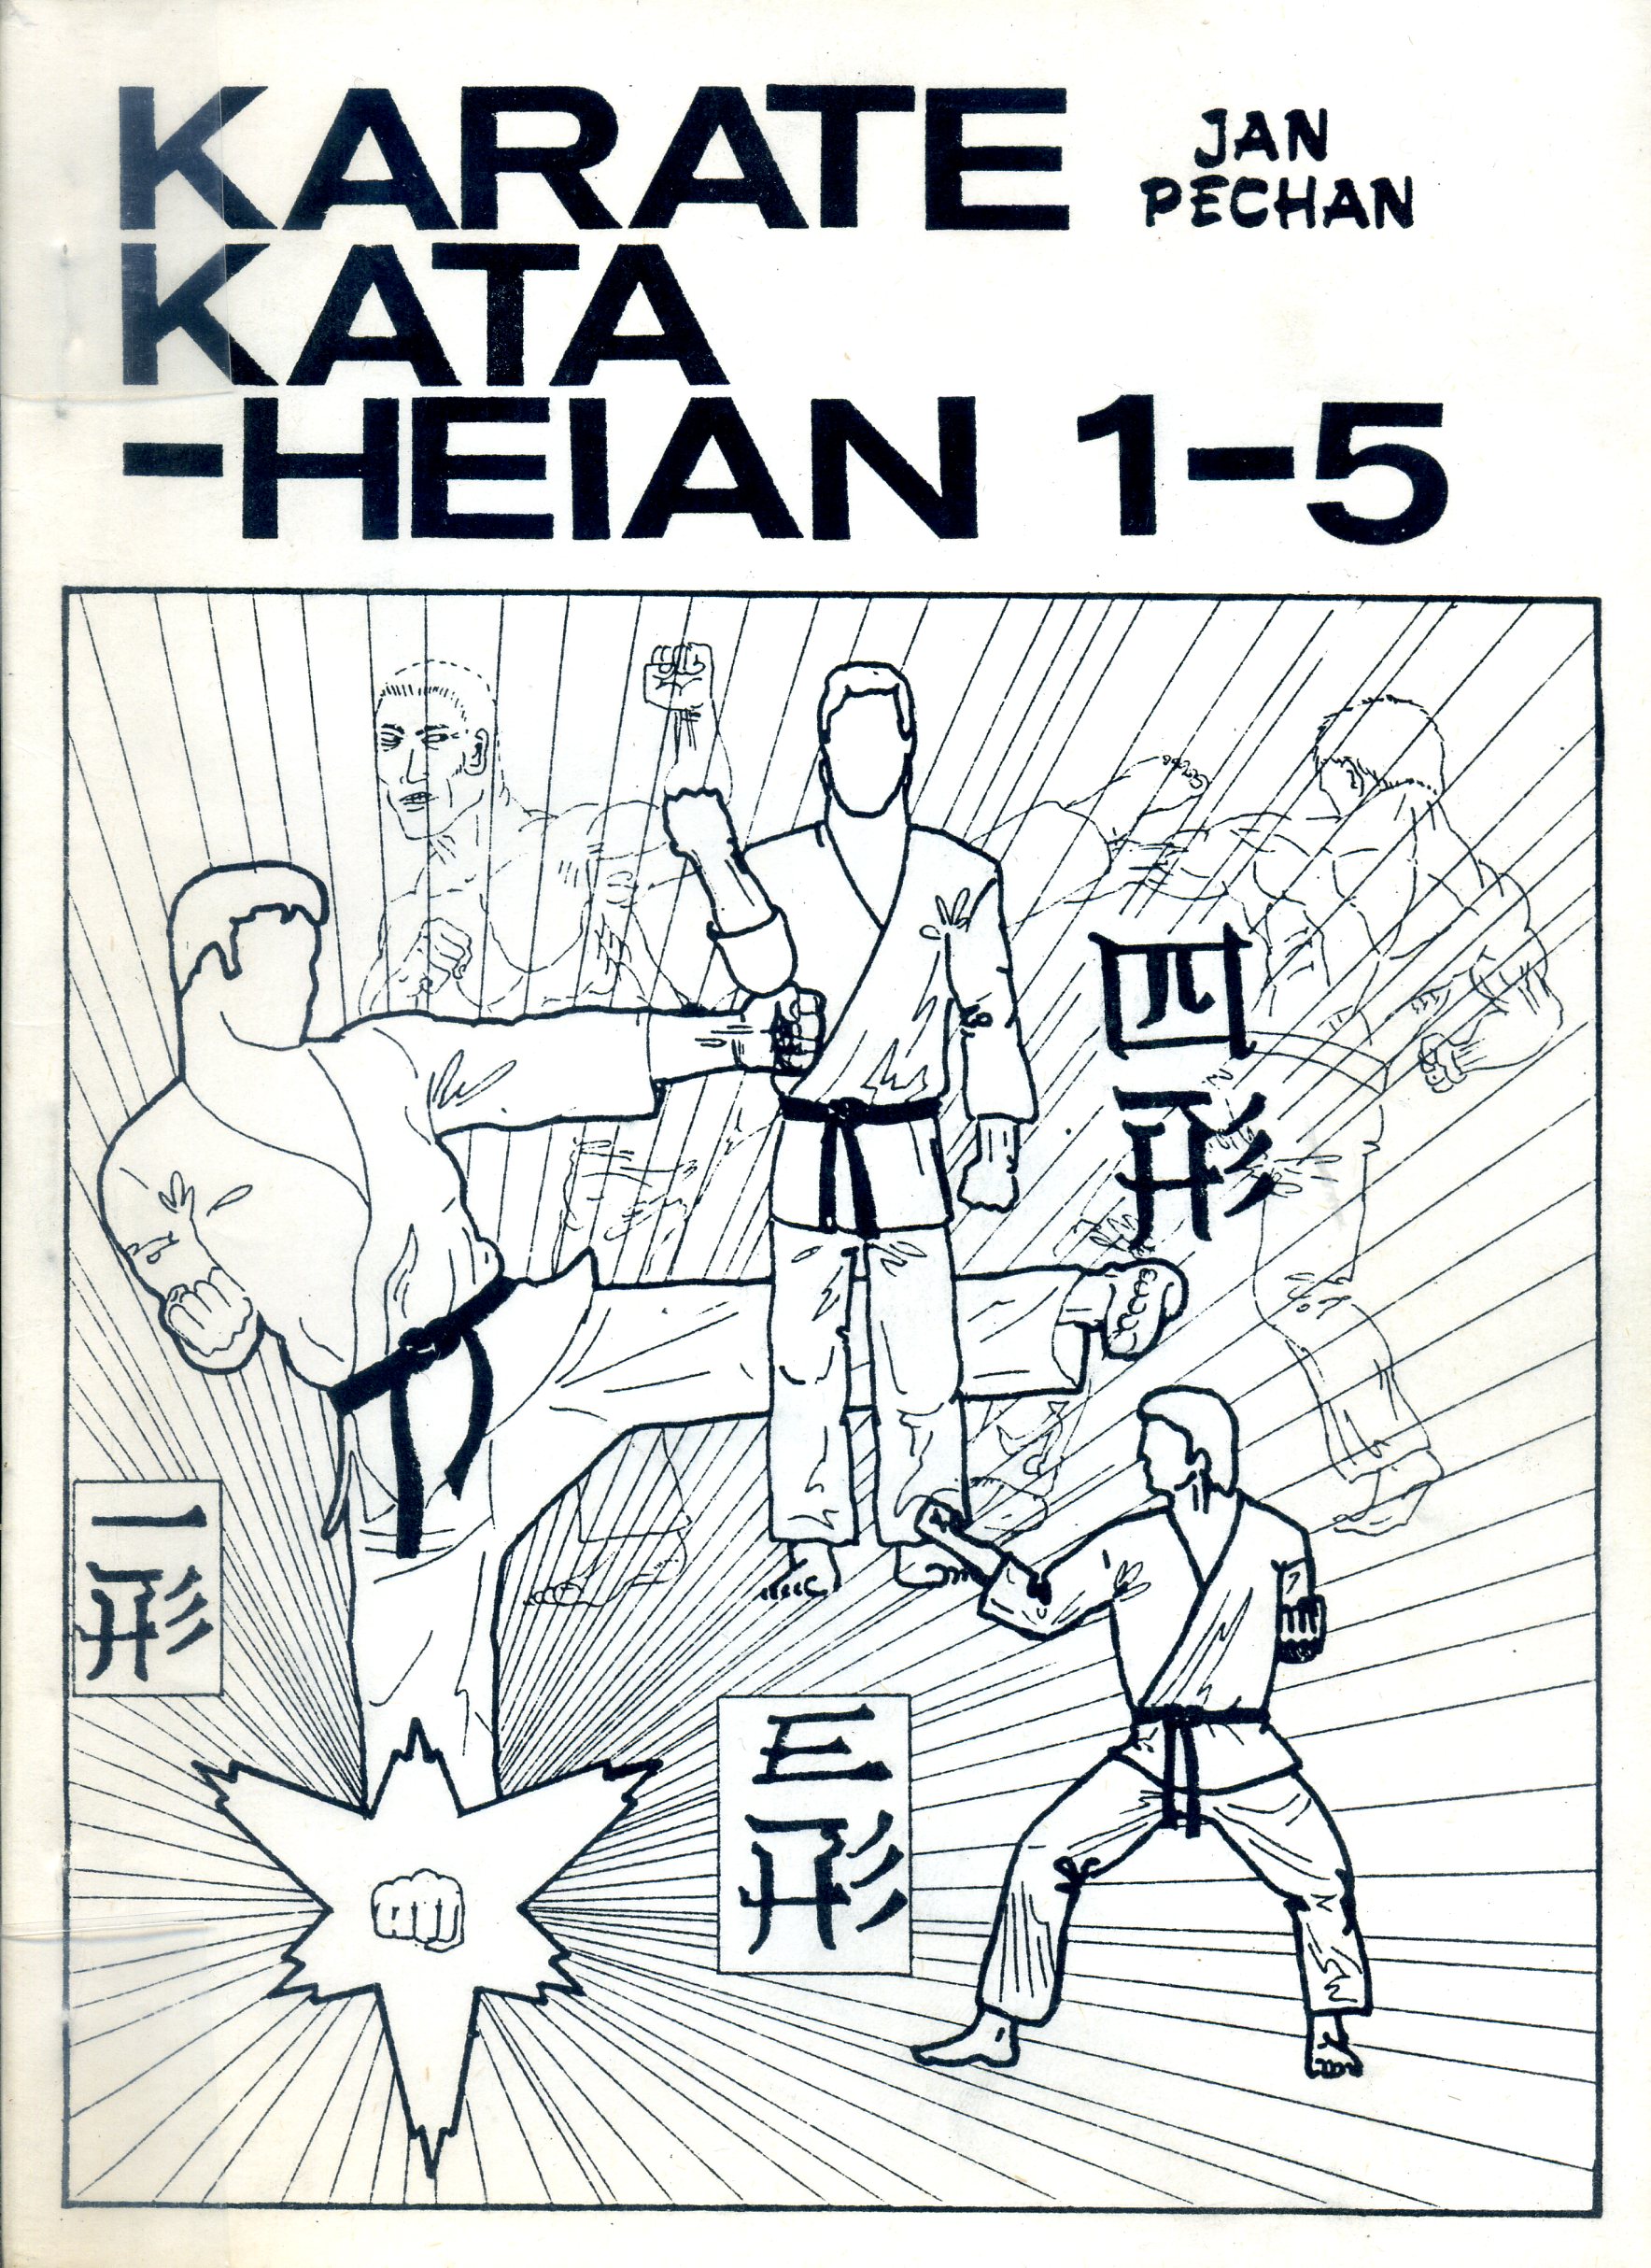 Karate KATA-HEIAN 1-5